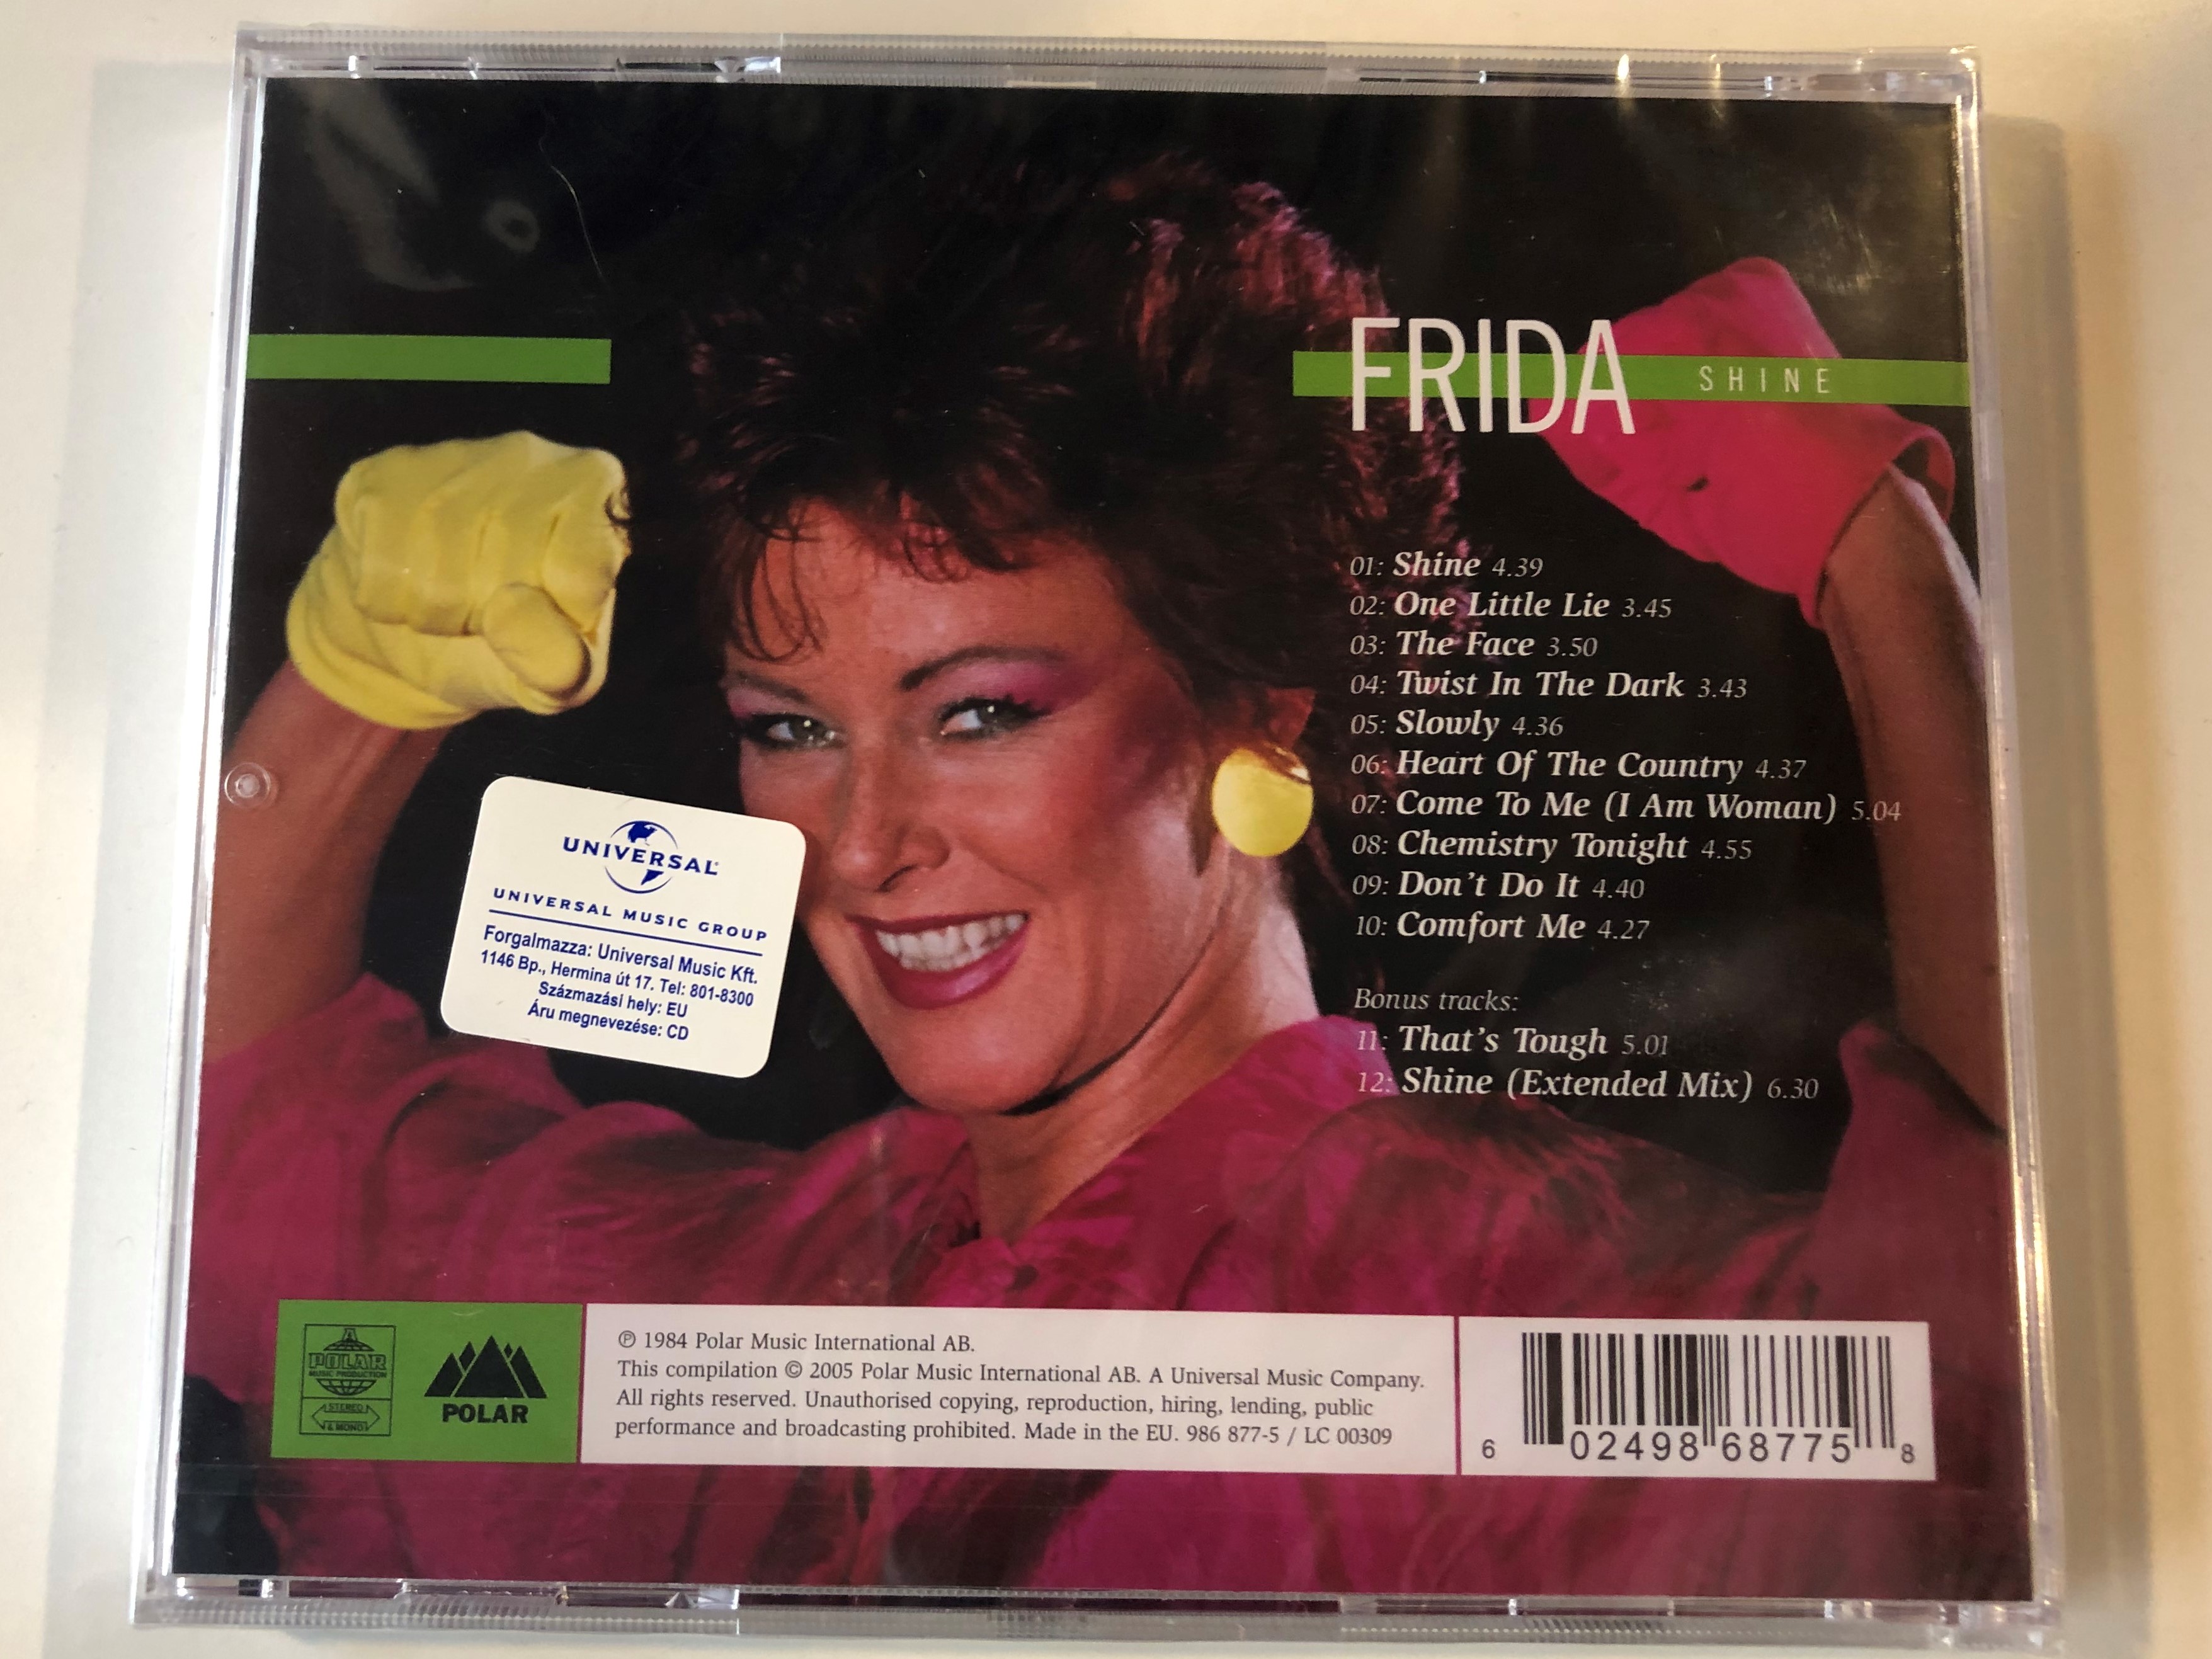 frida-shine-polar-audio-cd-2005-986-877-5-2-.jpg